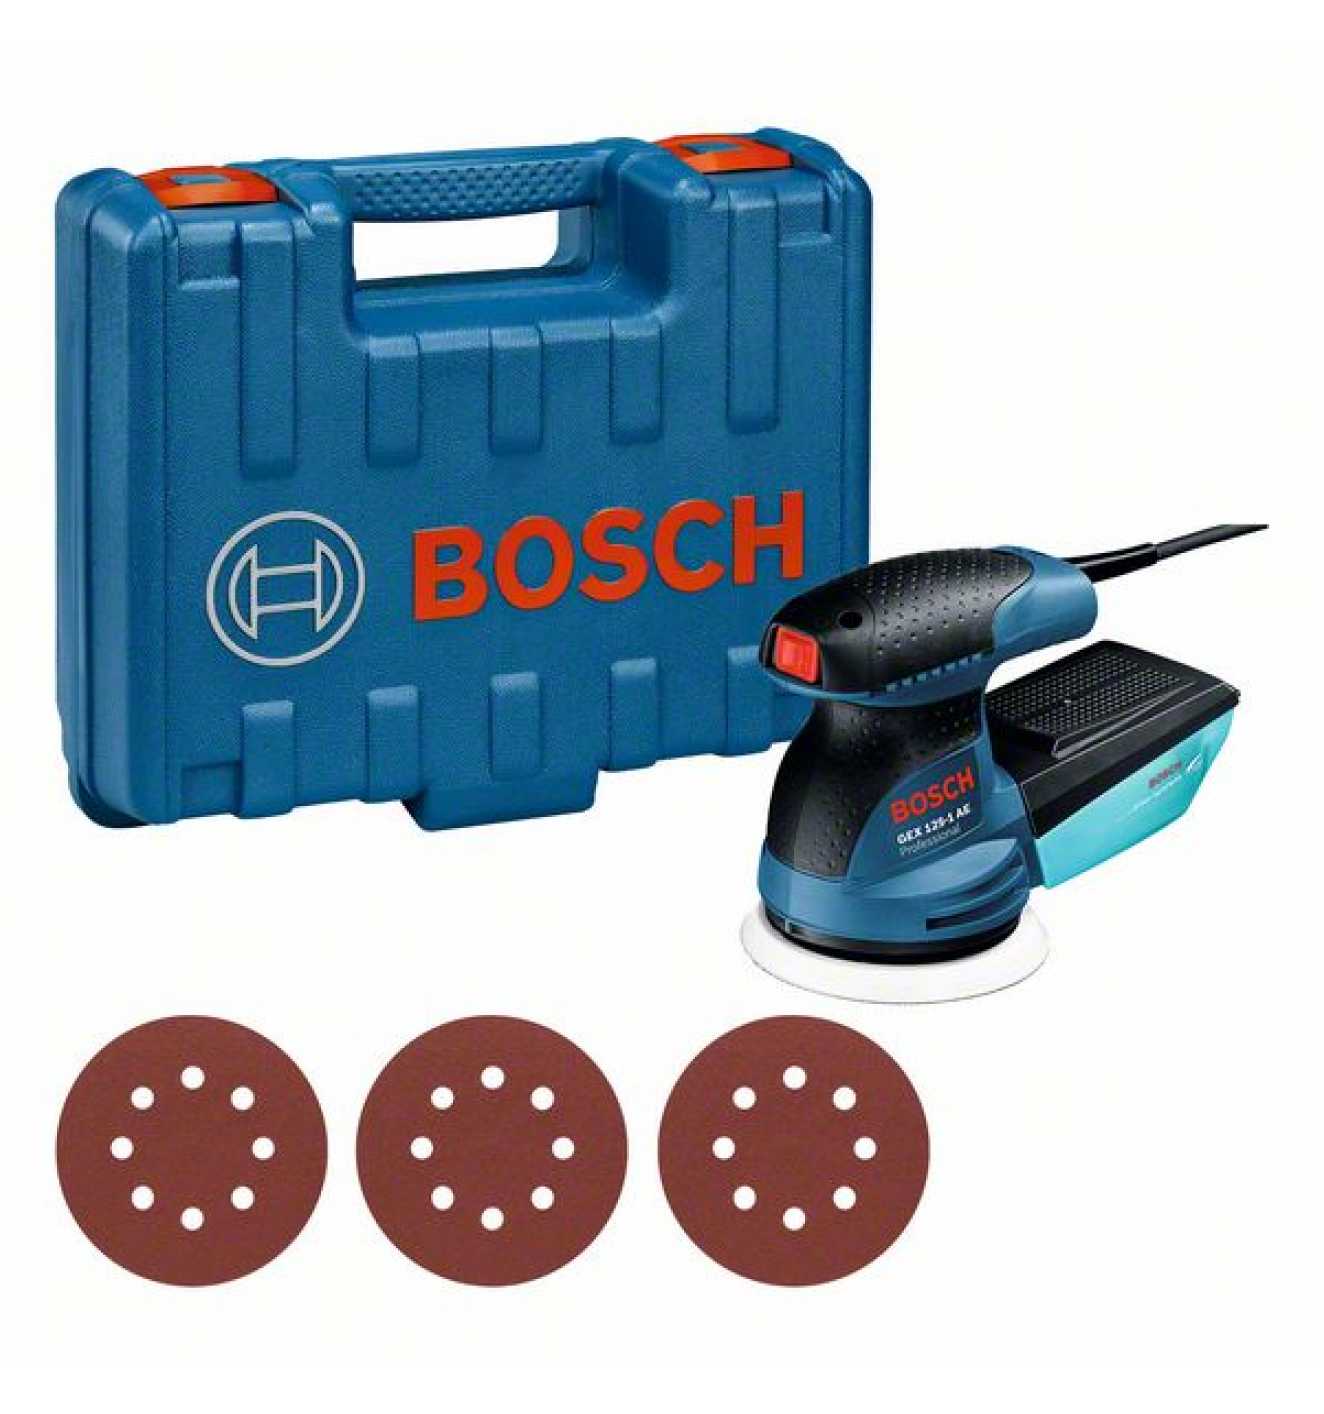 Bosch Exzenterschleifer GEX 125-1 AE, mit 3 x Schleifblatt C470, in  Handwerkerkoffer - bei Reidl.de online kaufen | Exzenterschleifer